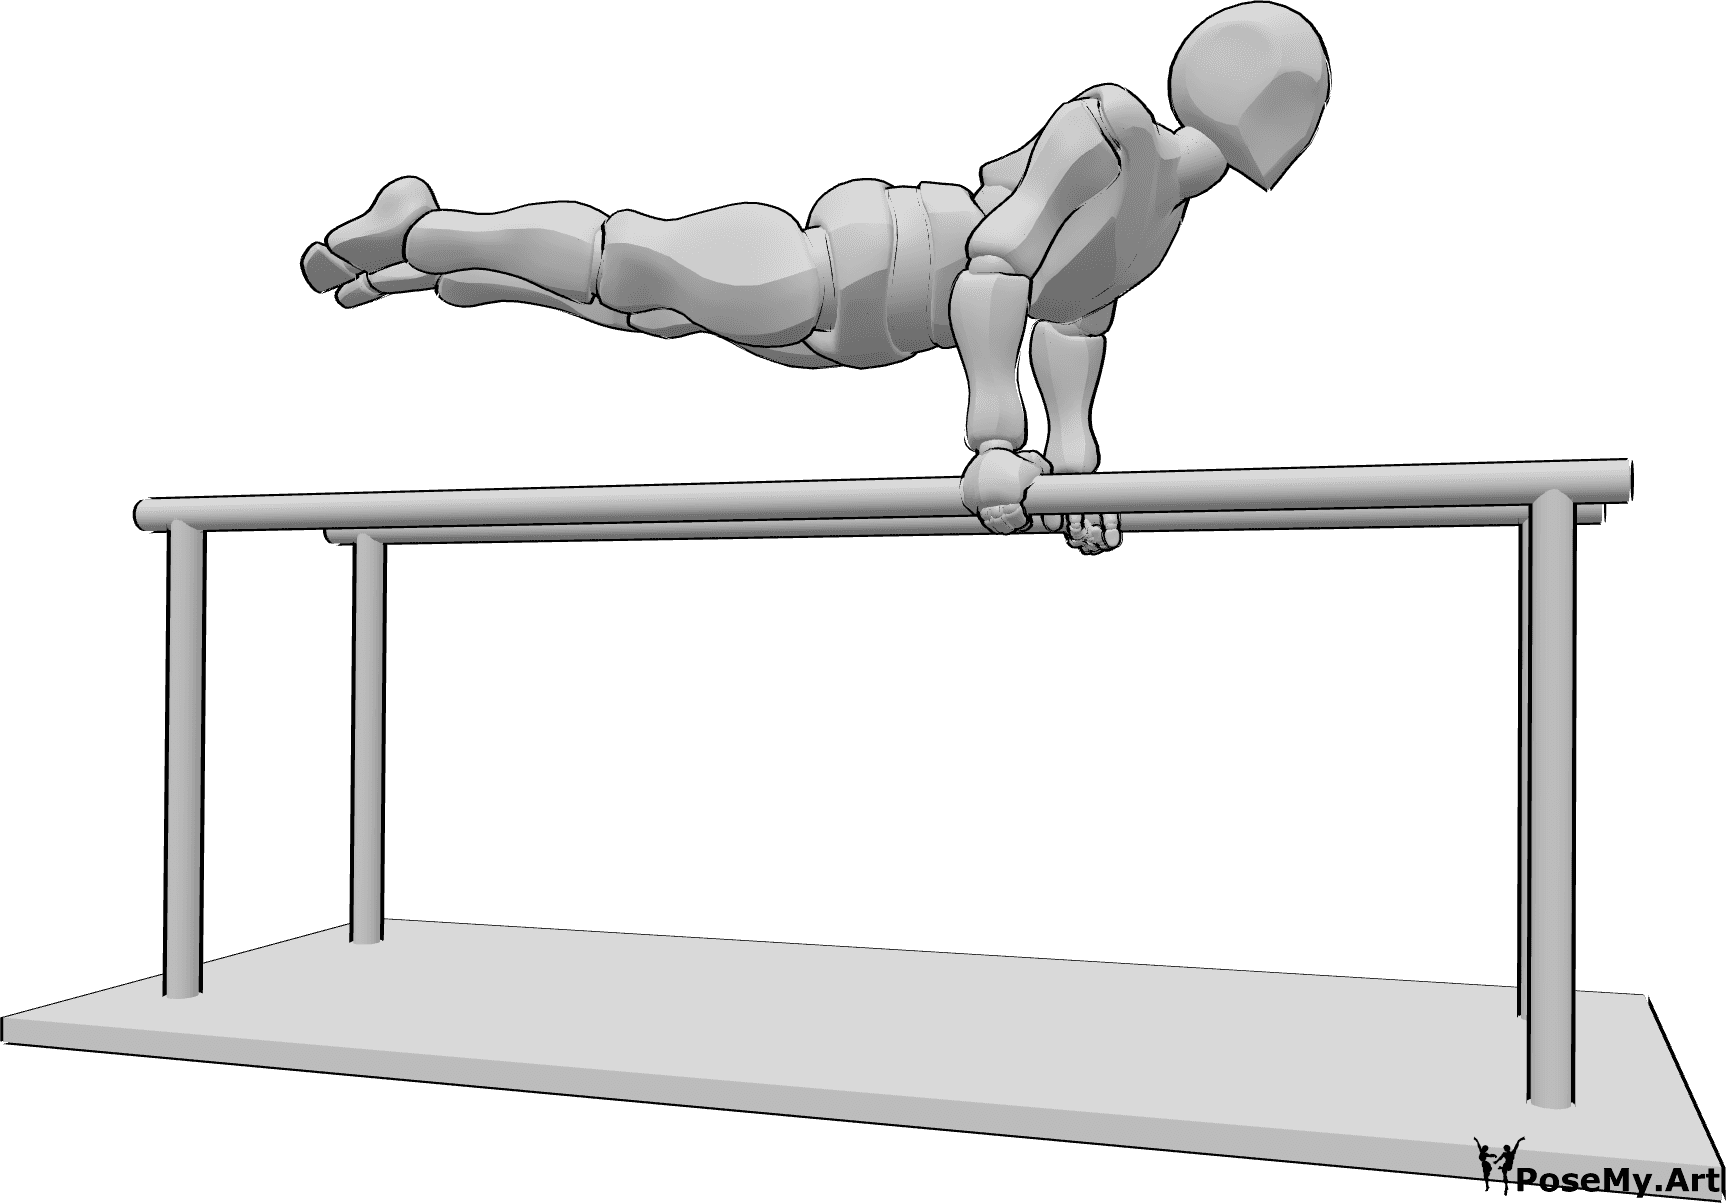 Riferimento alle pose- Posa in piedi alle parallele - L'uomo fa ginnastica alle parallele, con le mani in piedi e mantenendo il corpo dritto in aria in orizzontale.